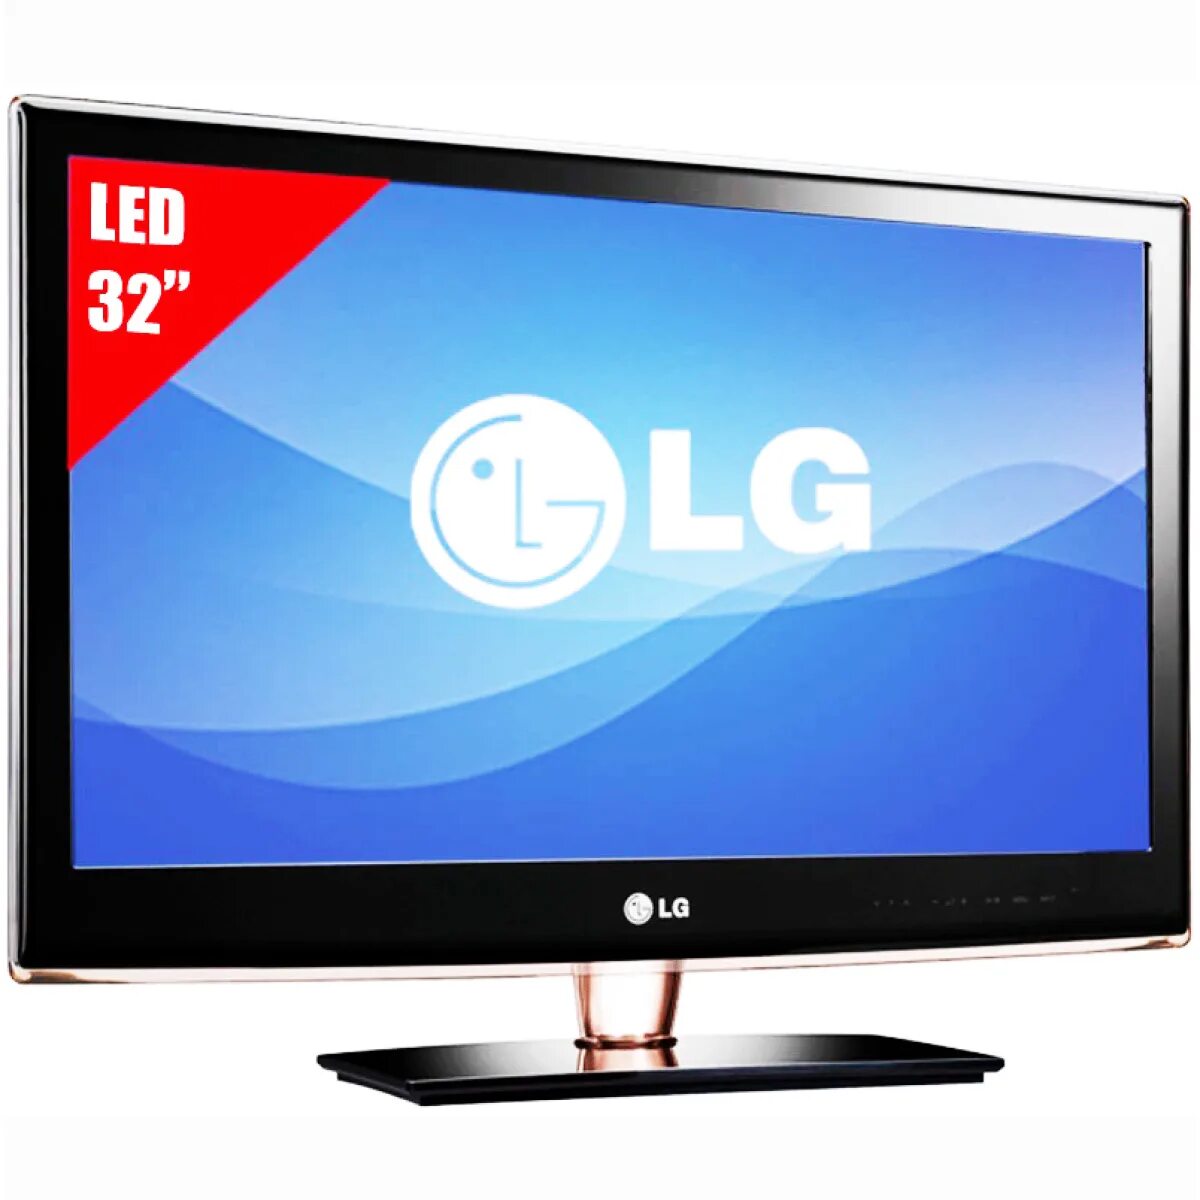 Поддержка lg телевизоров. LG led TV 32. LG led LCD 3d TV 32lb2. LG 32 led Television. ДНС телевизоры 32 дюйма Лджи.